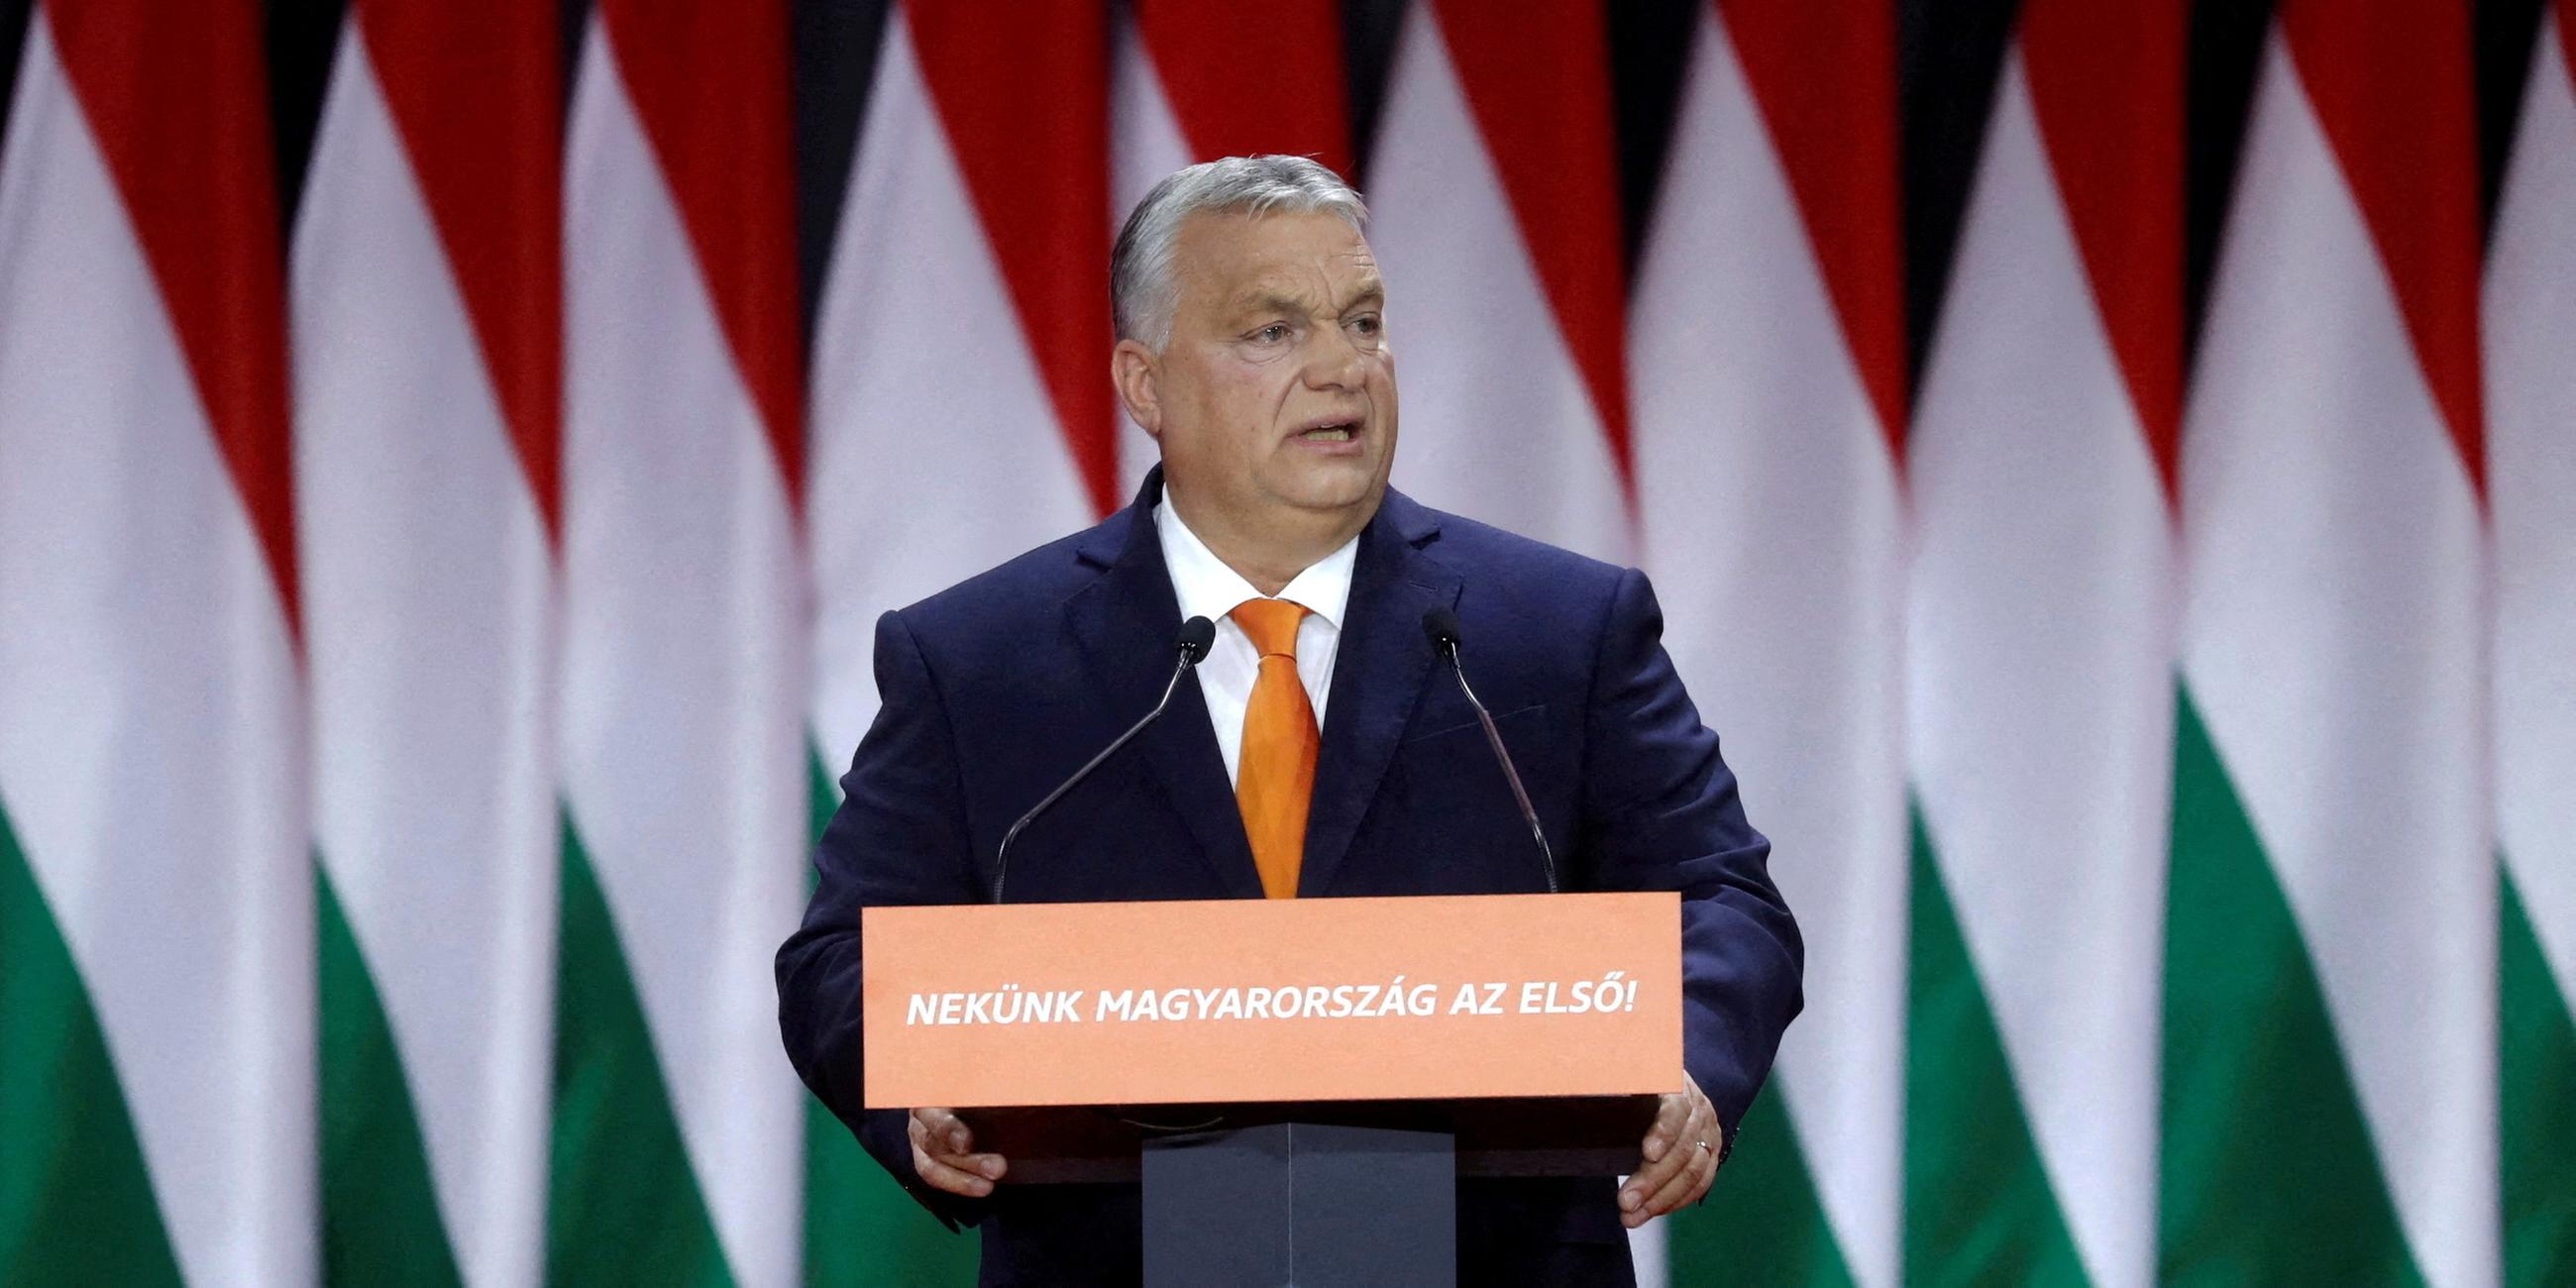 Viktor Orban steht vor Ungarn-Flaggen an einem Rednerpult und hält sich mit beiden Händen daran fest.